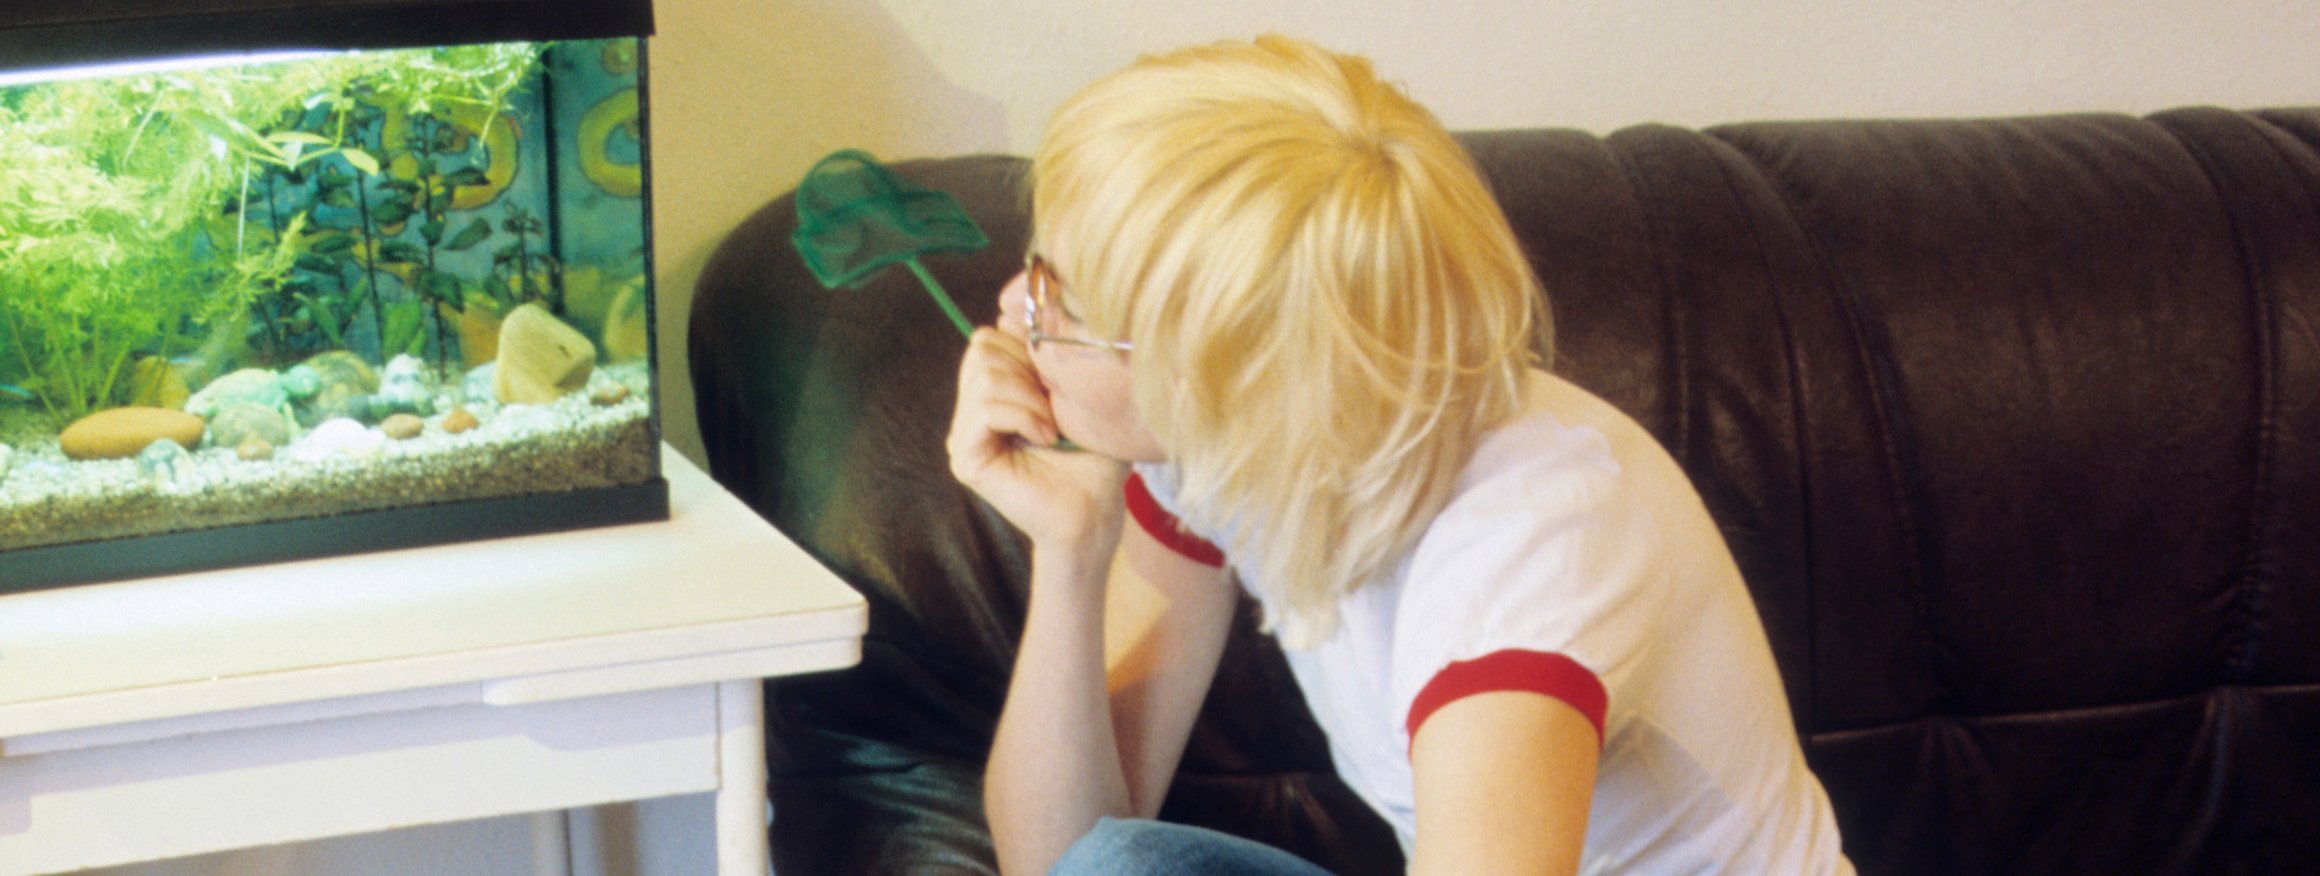 Eine junge blonde Frau im T-Shirt sitzt auf einem Sofa und schaut auf verträumt auf ein Aquarium, das neben ihr auf einem Tisch steht